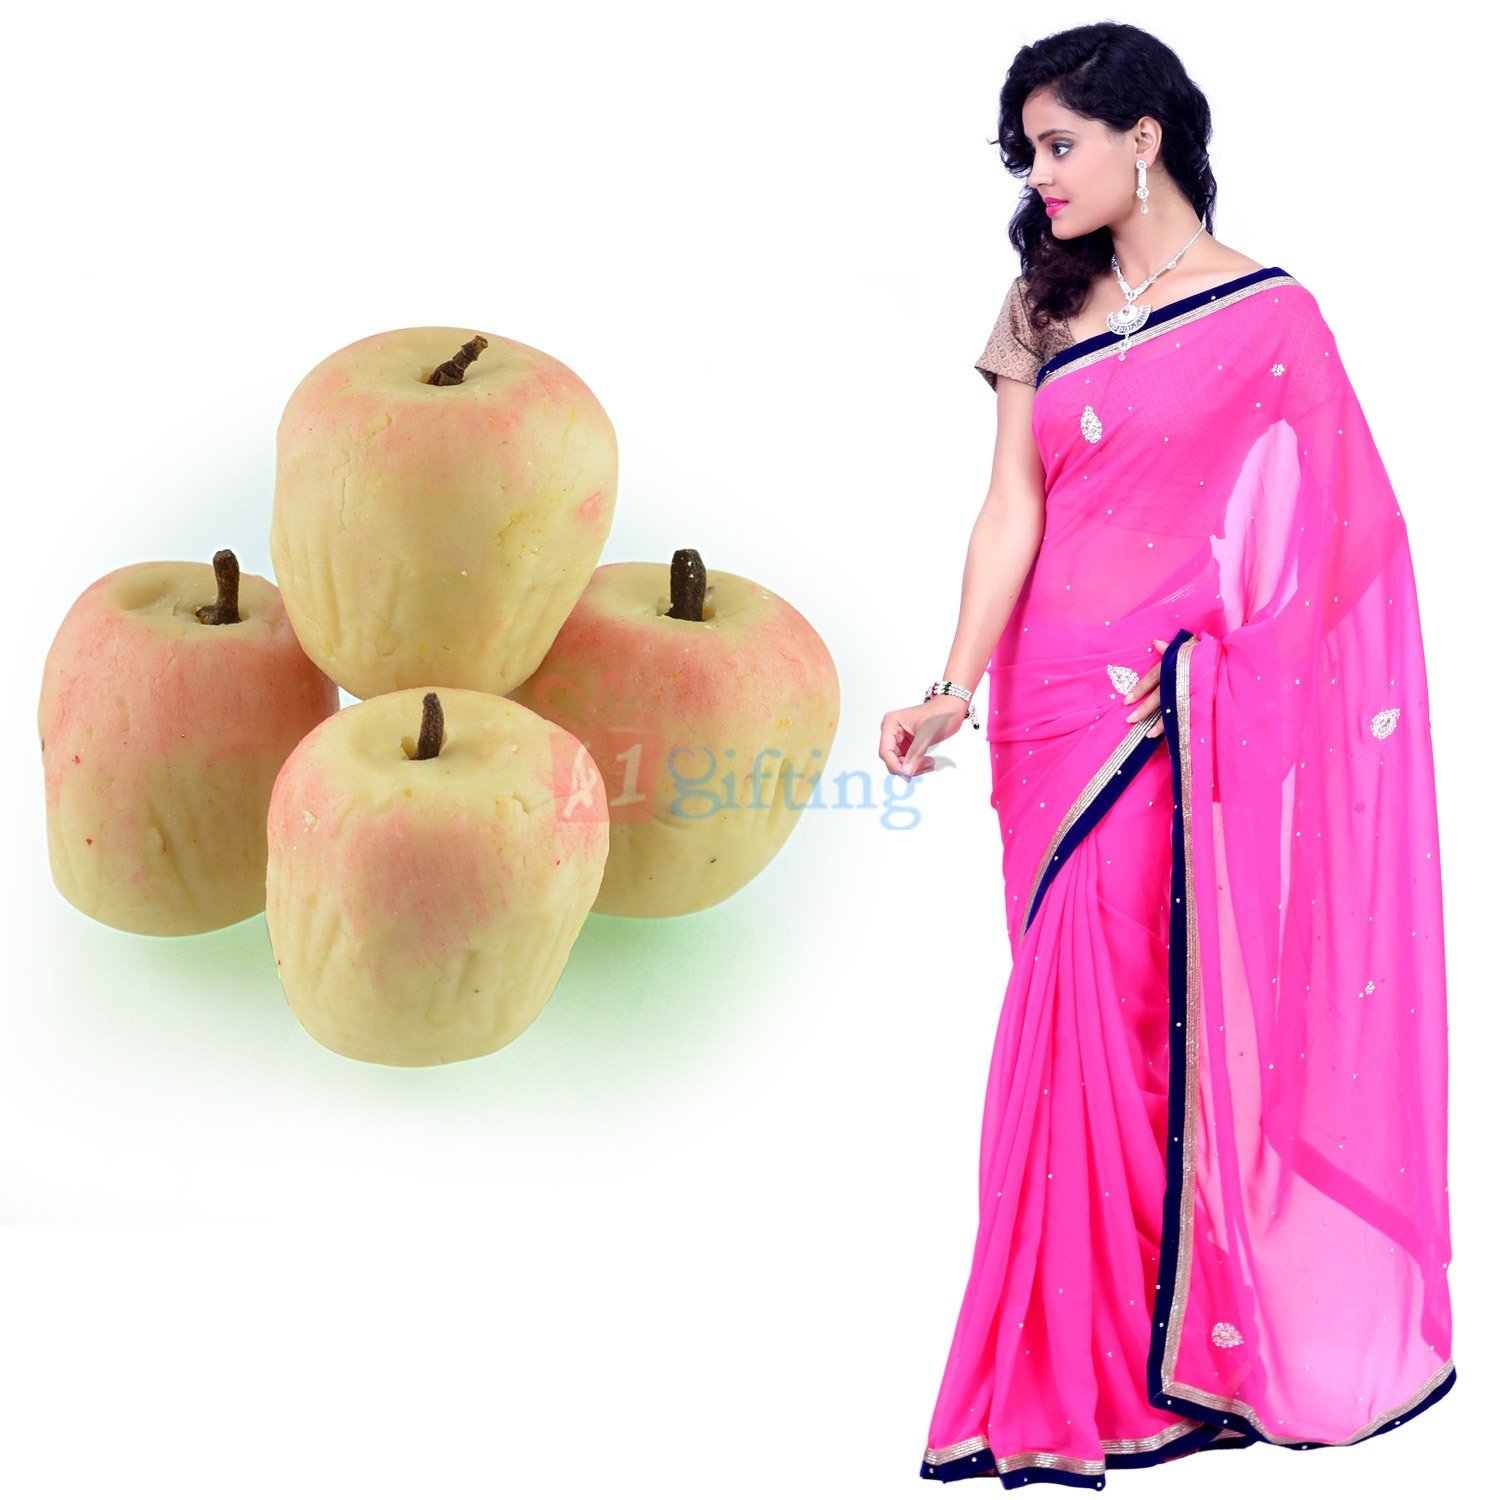 Gorgious Saree with Kaju Apple Gift